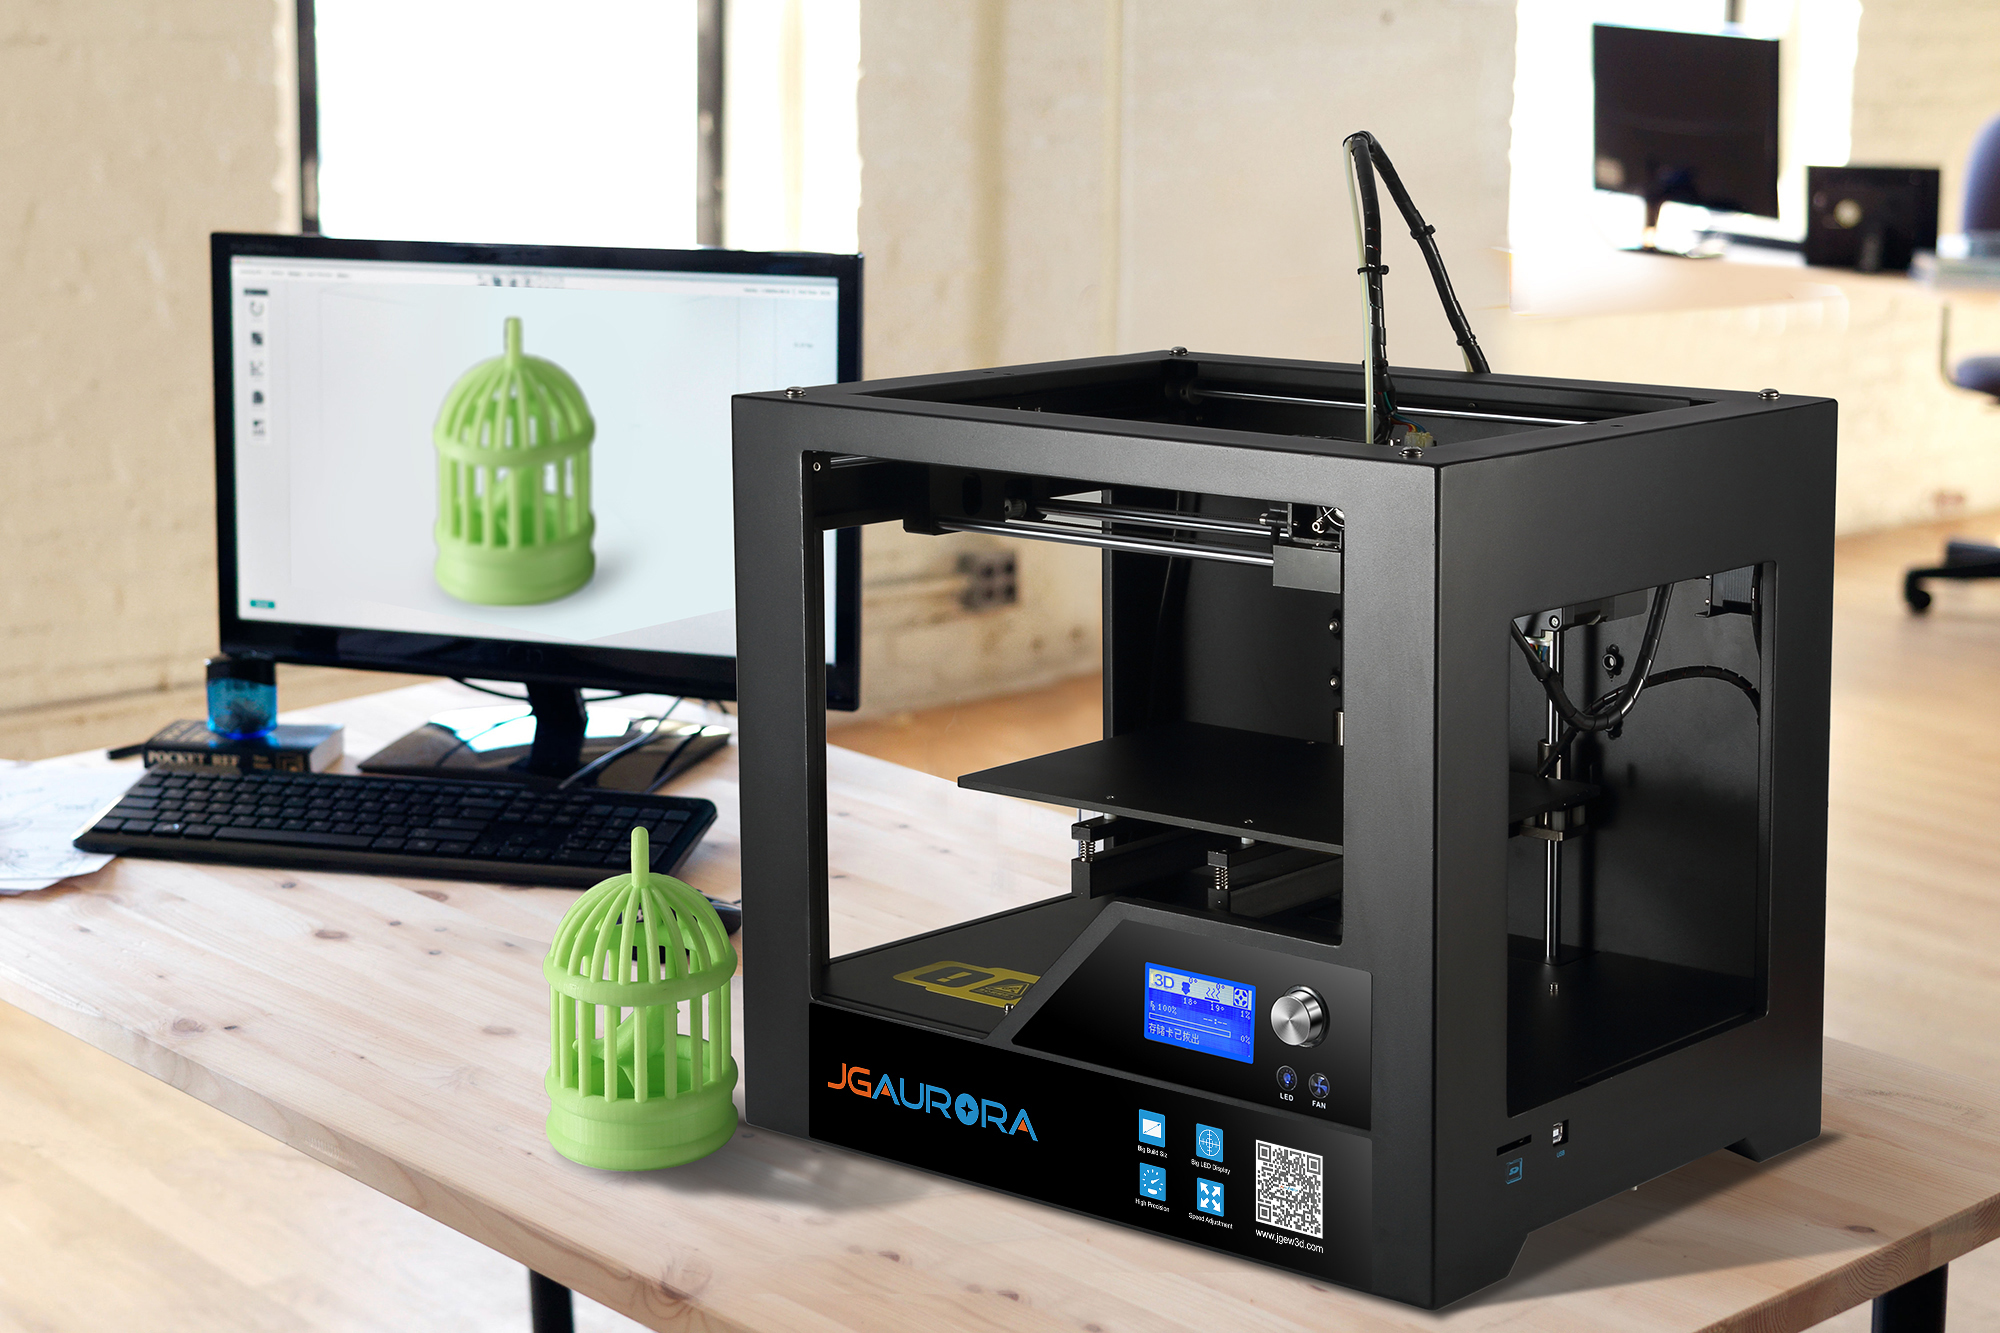 Printer 3D Z-603S JG-Aurora